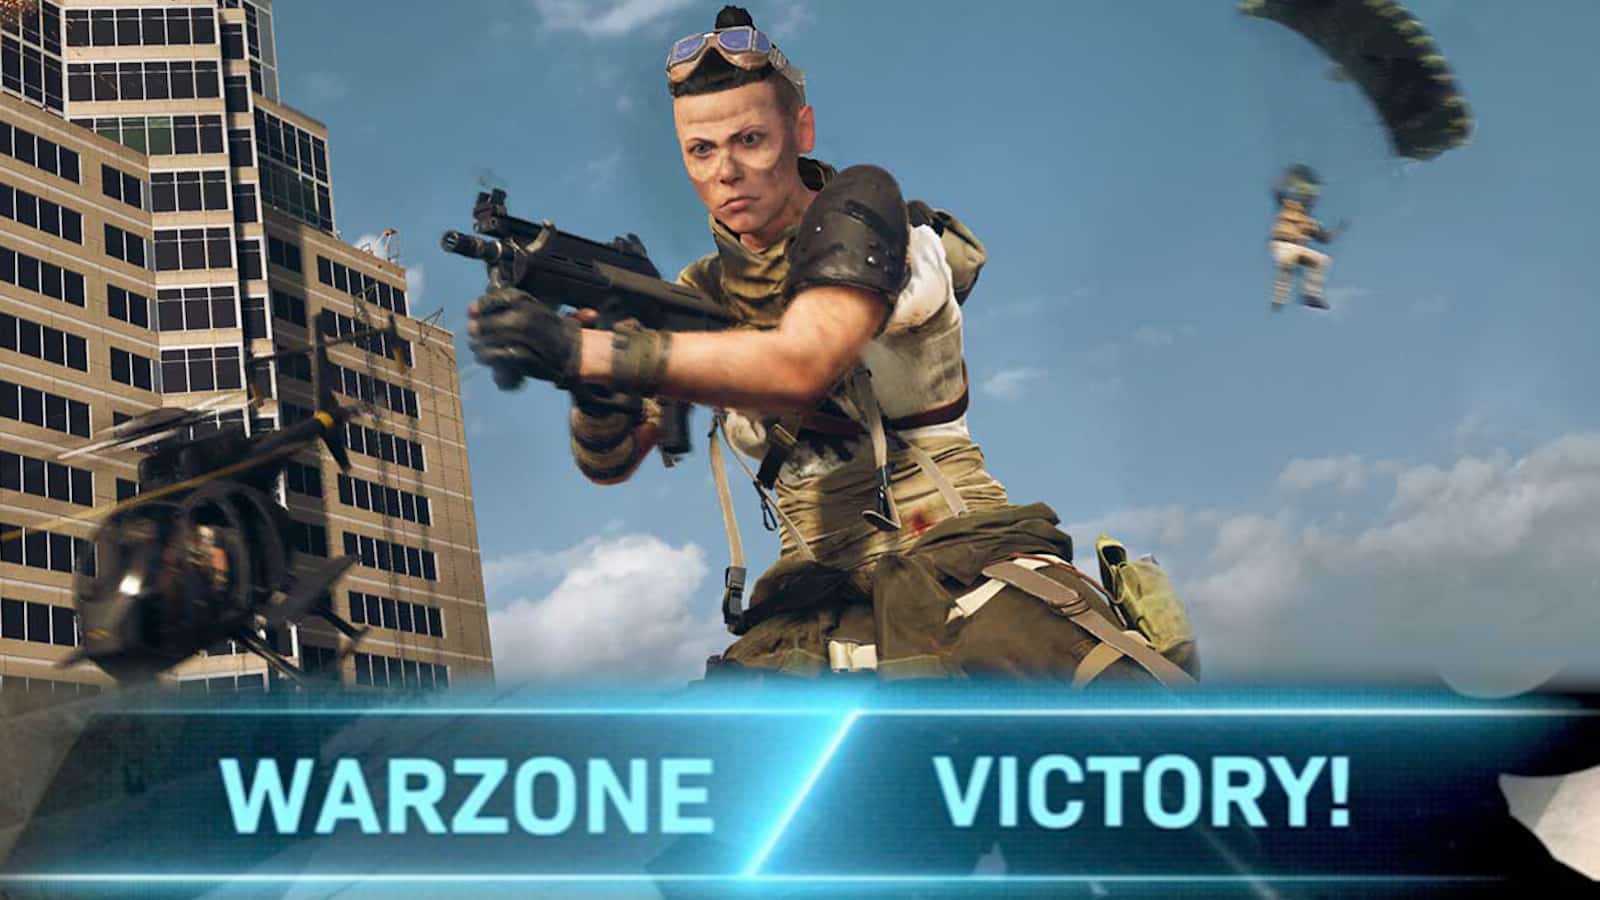 warzone wholesome hero kill hacker clip